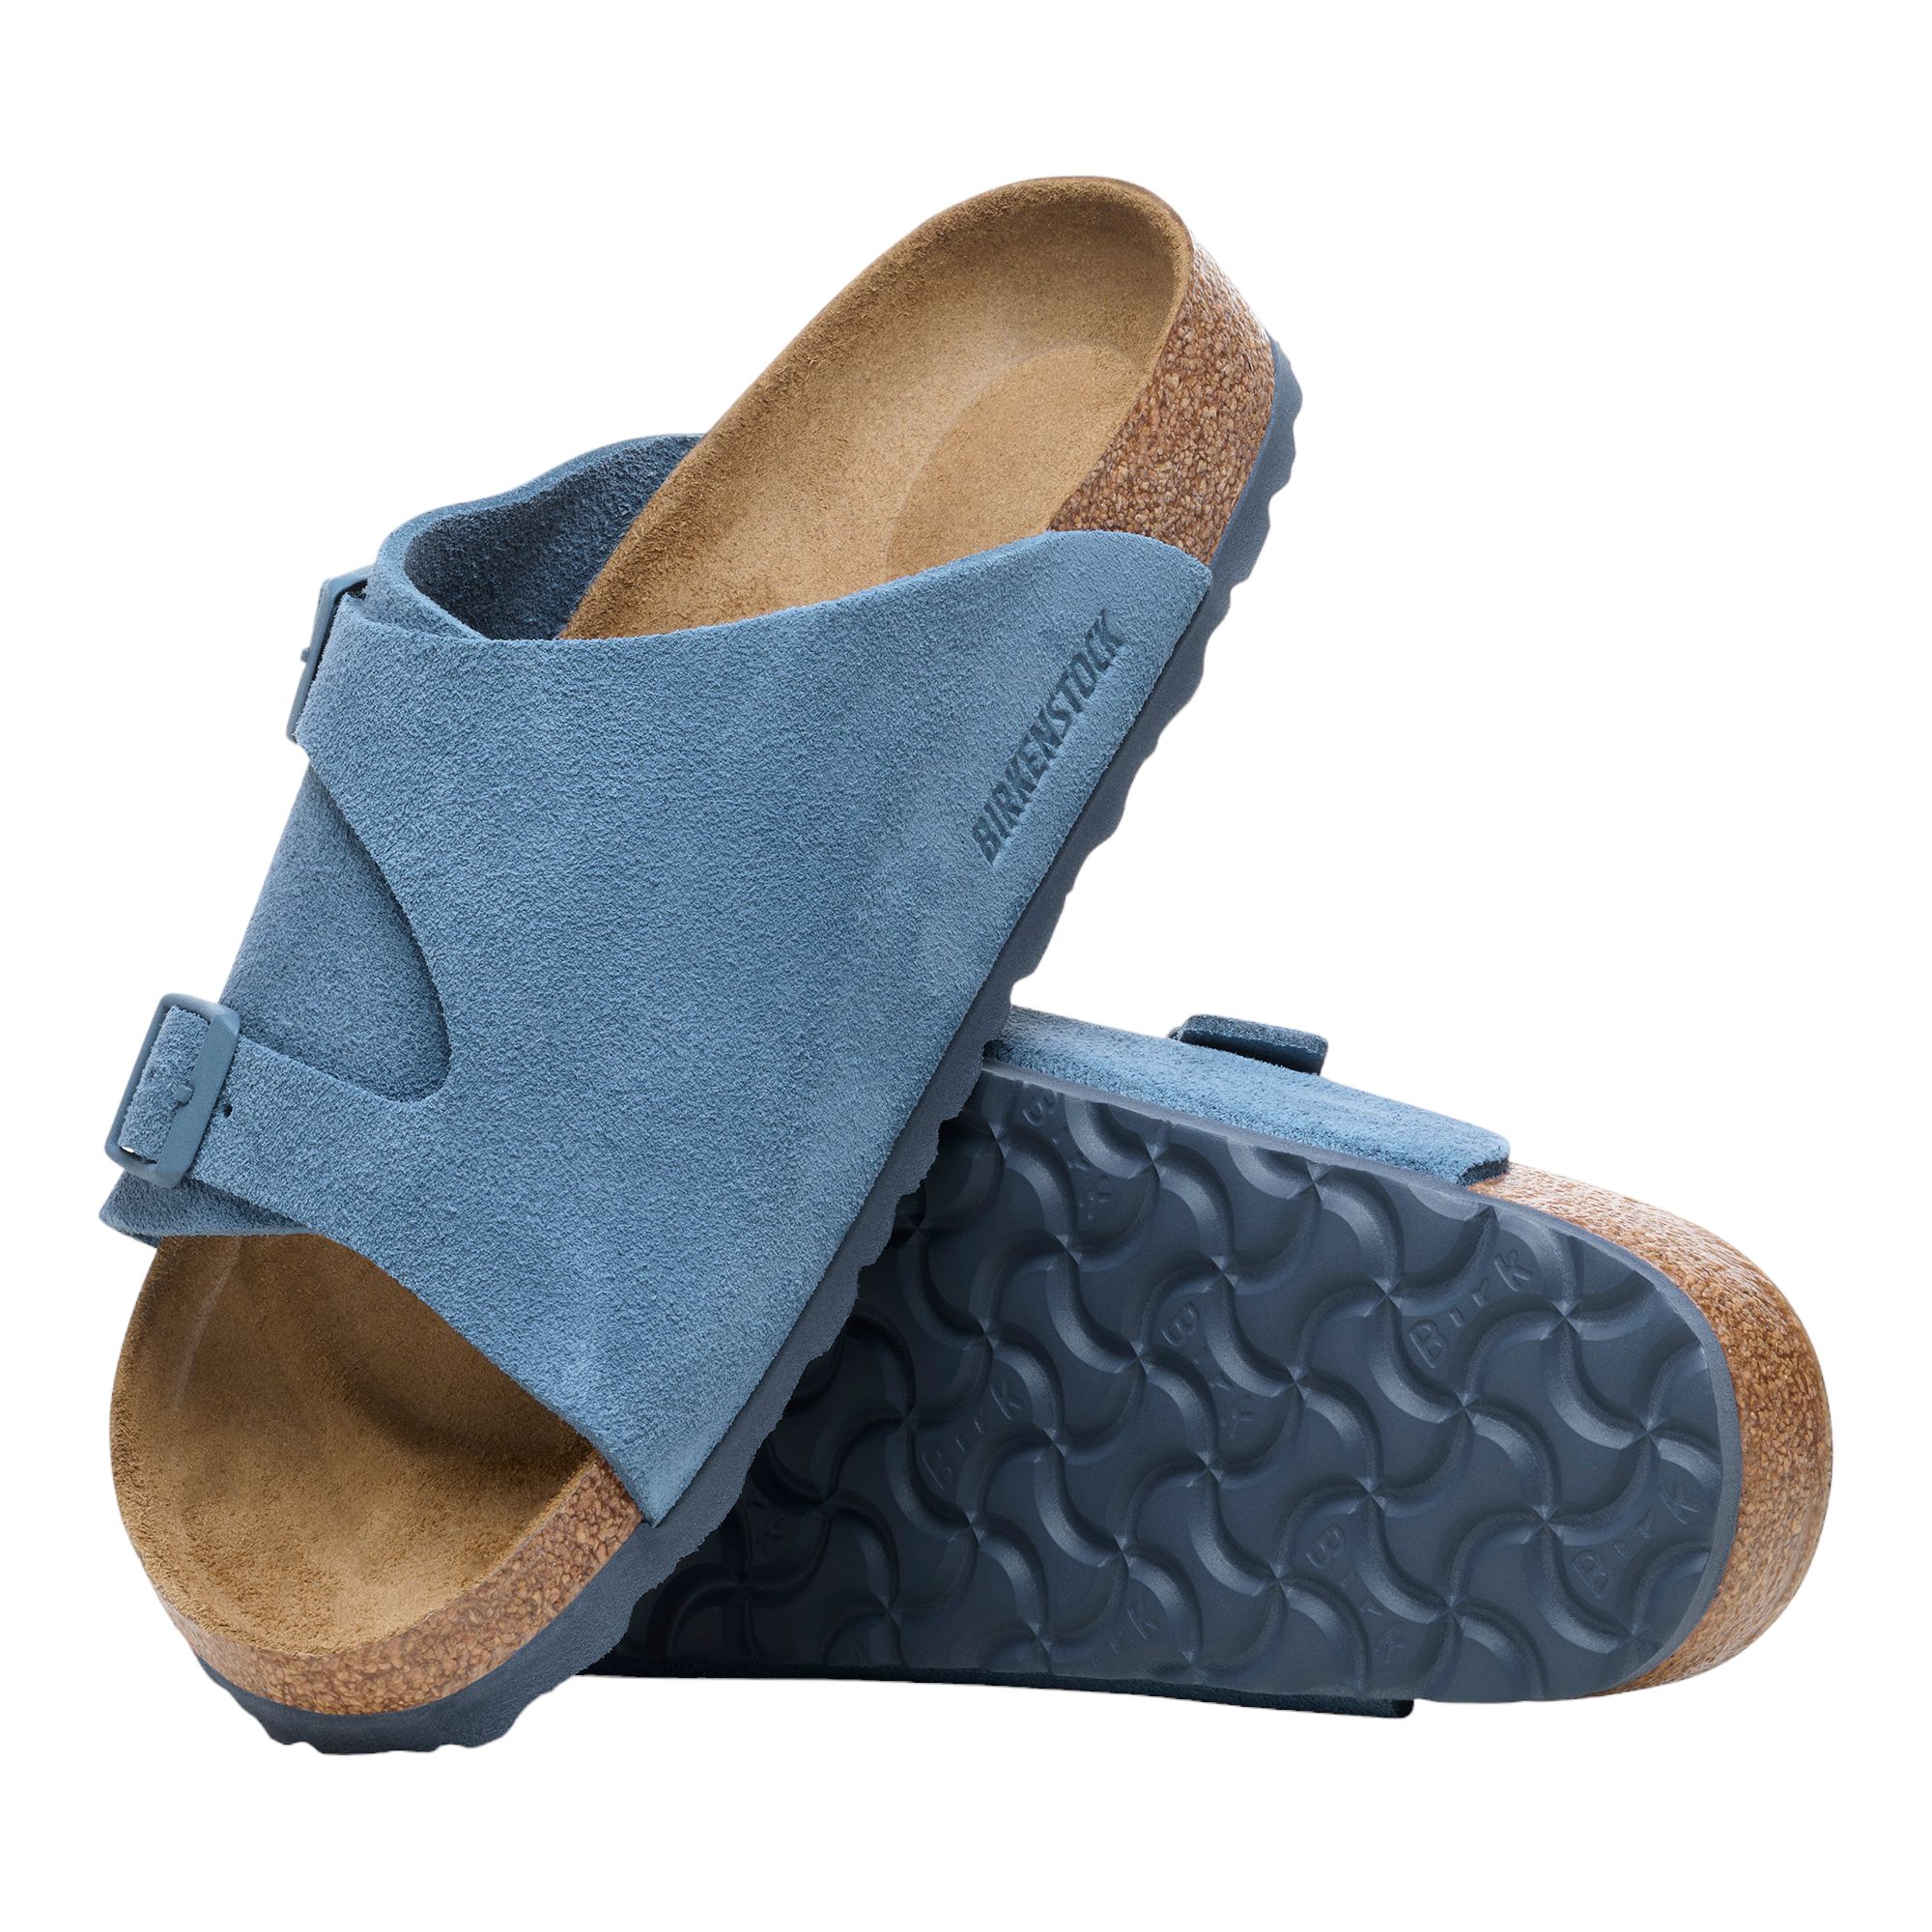 Zurich BS Sandals Elemental Blue 